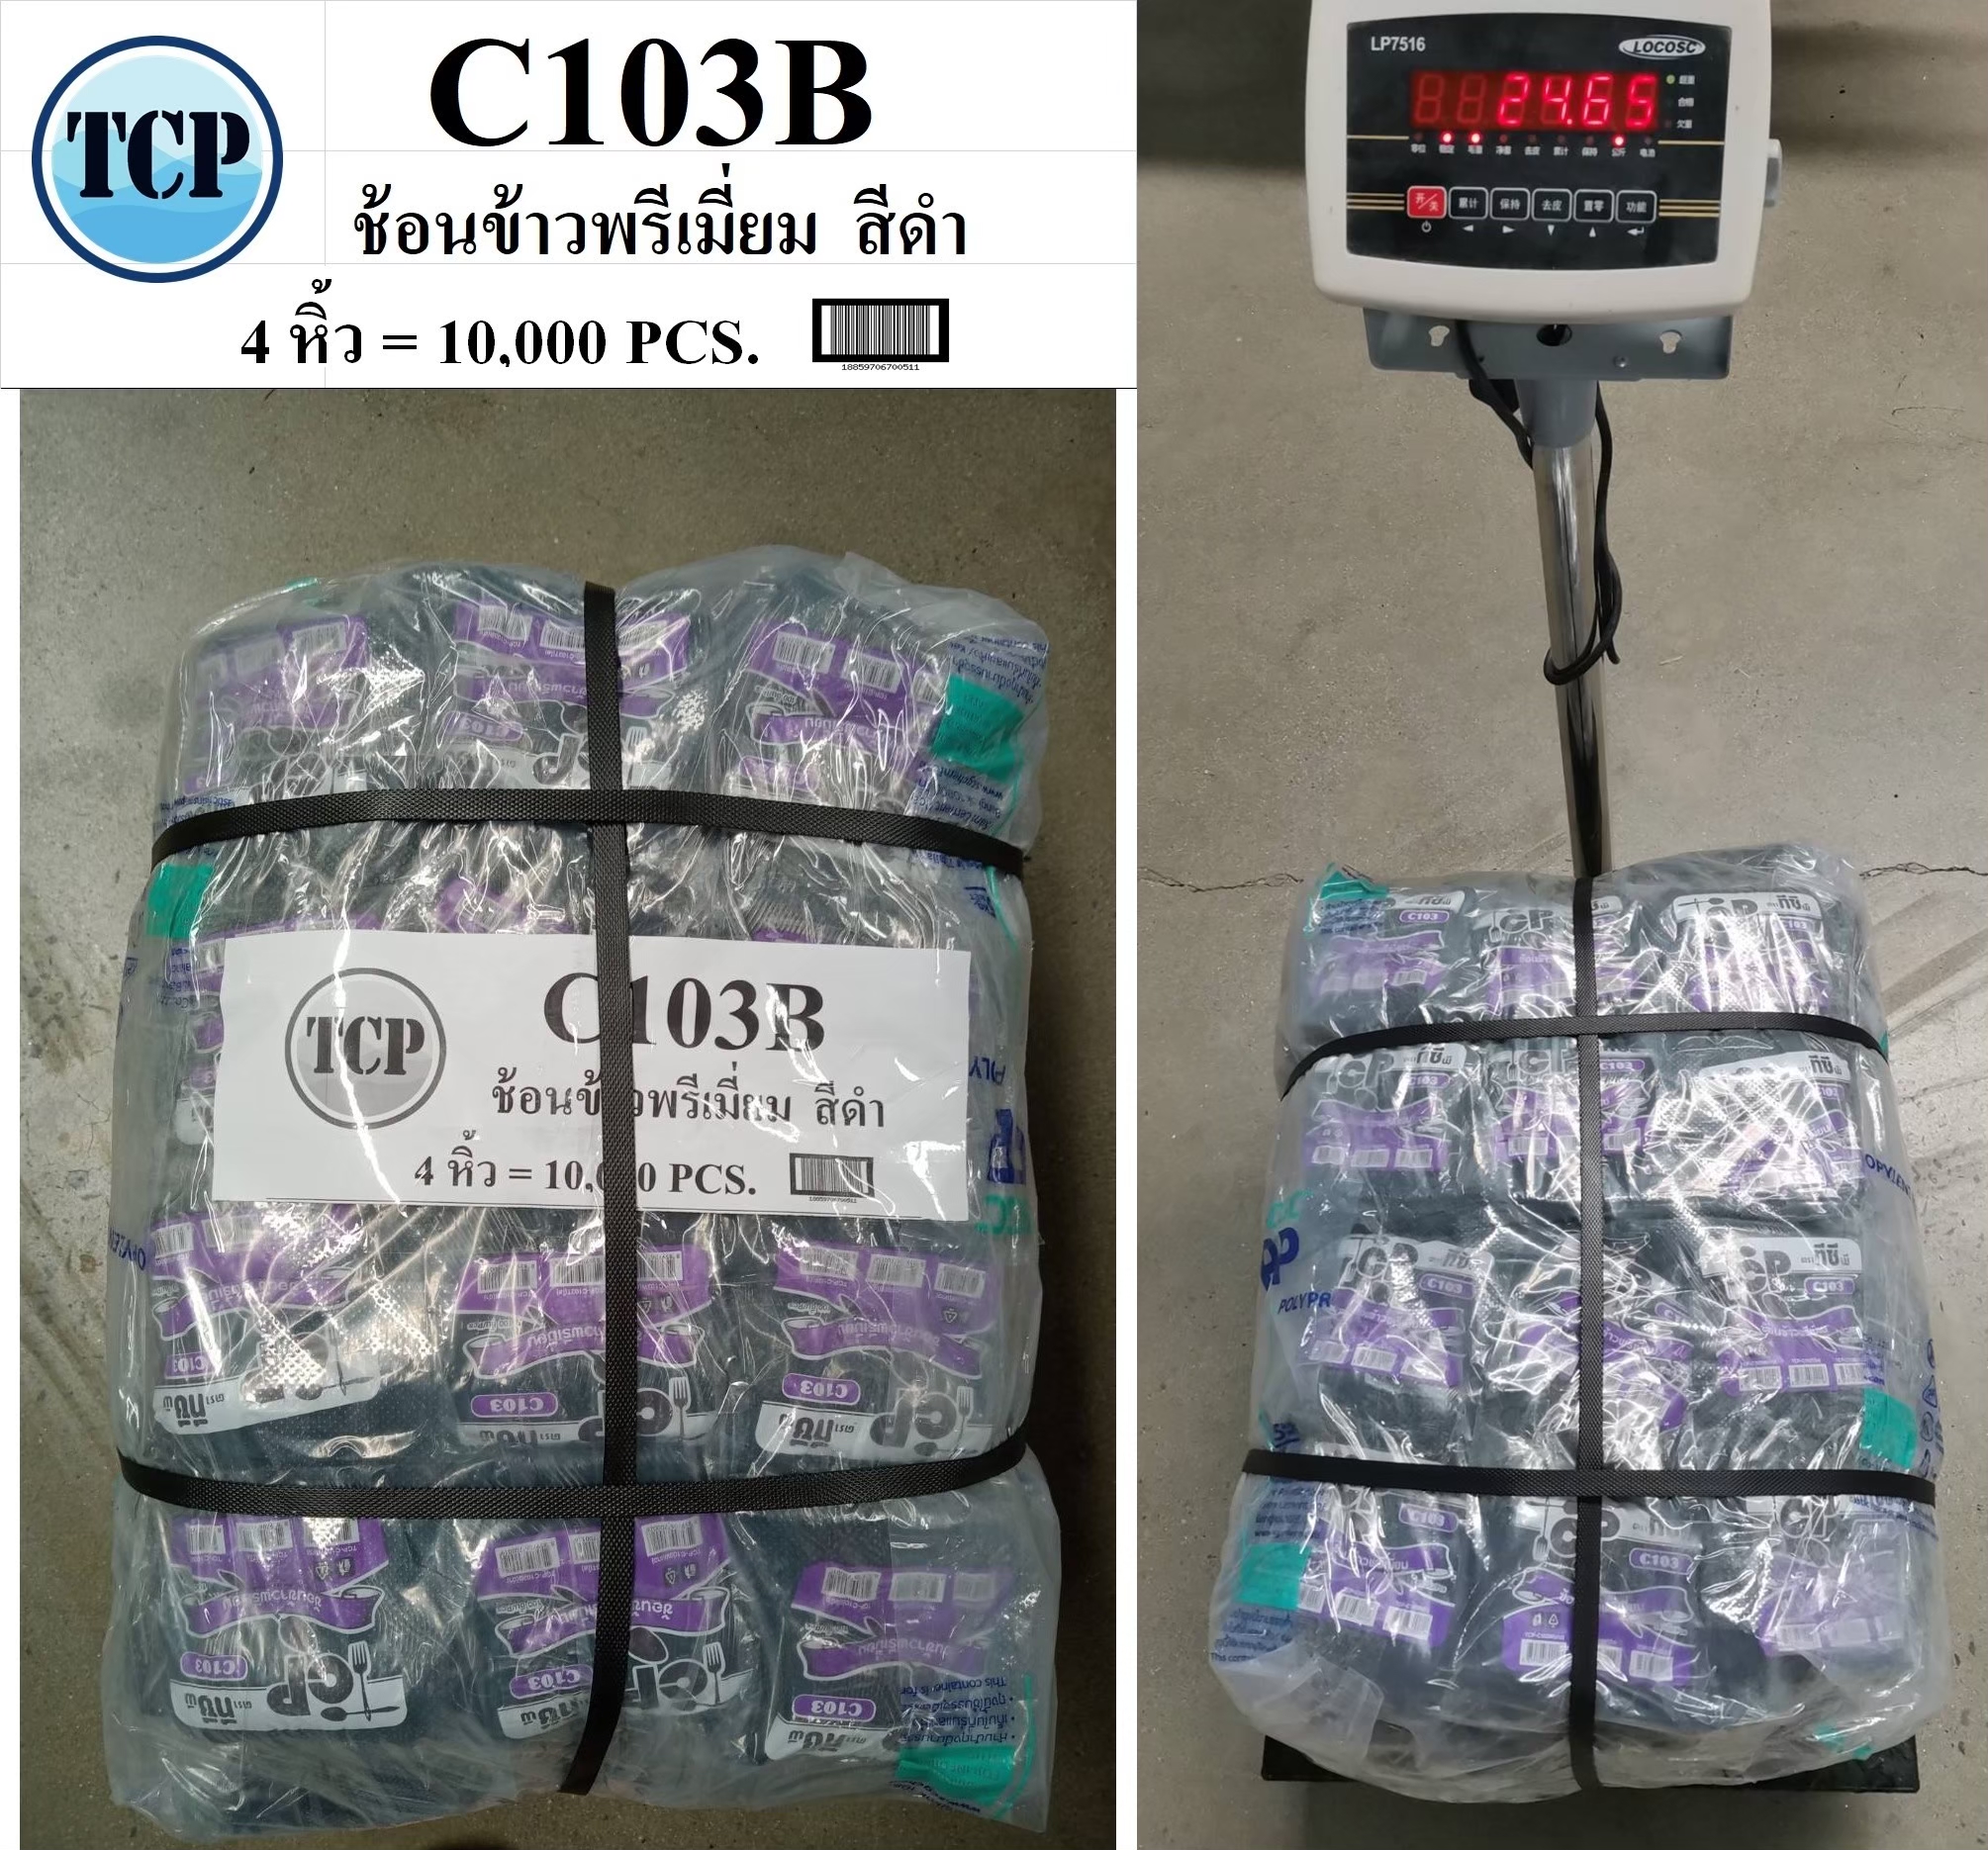 TCP-C103B ช้อนข้าวพรีเมี่ยม สีดำ